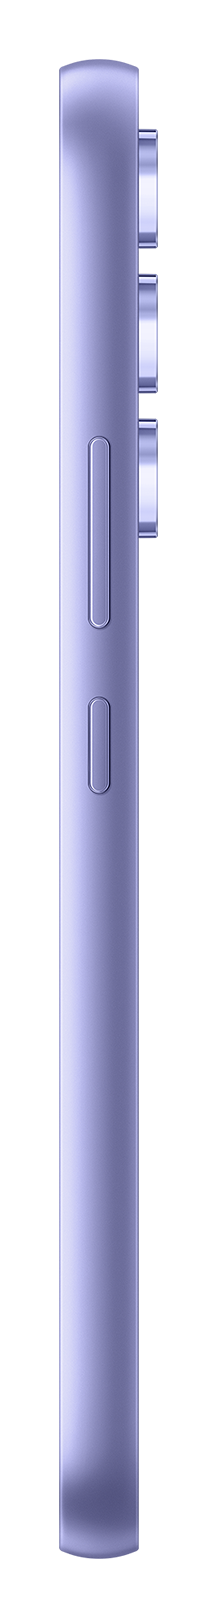 Samsung A54 violet side